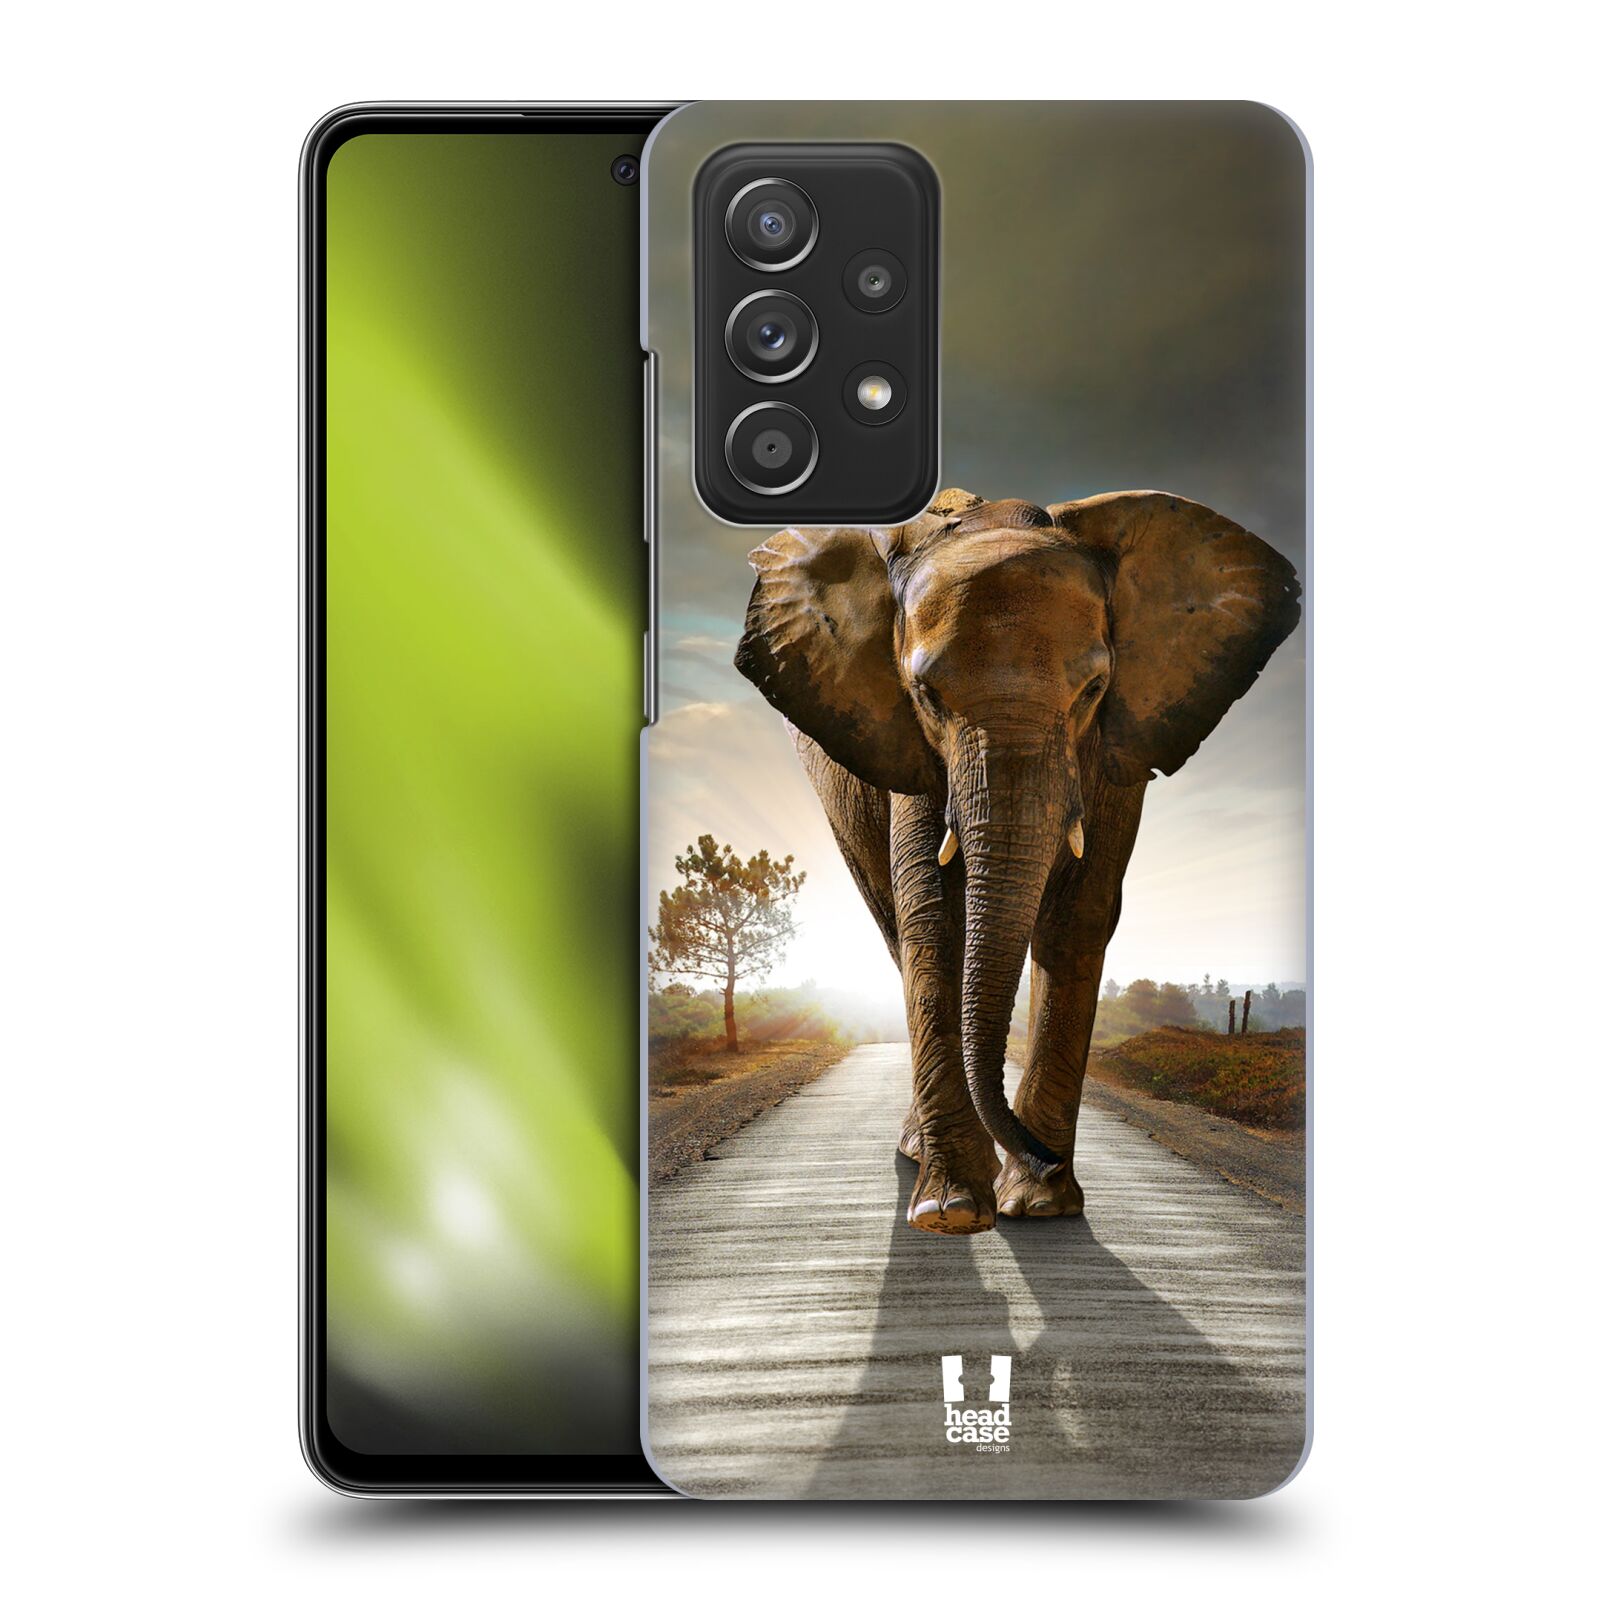 Zadní obal pro mobil Samsung Galaxy A52 / A52s / A52 5G - HEAD CASE - Svět zvířat kráčející slon